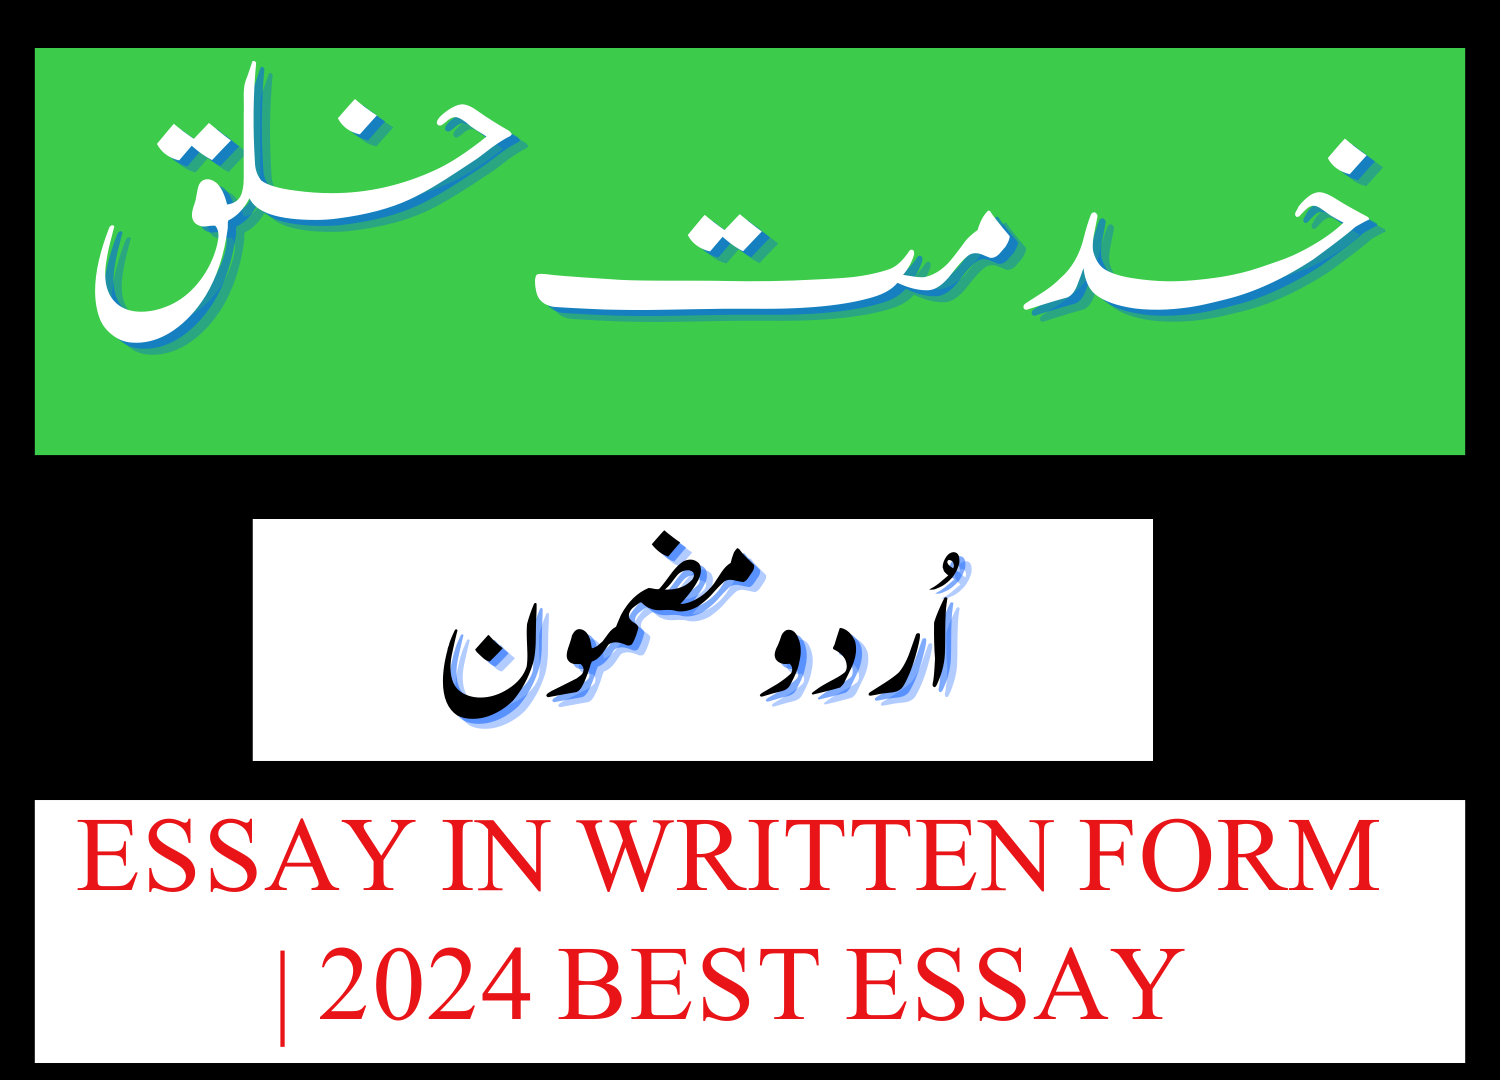 Khidmat e khalq Essay in Urdu